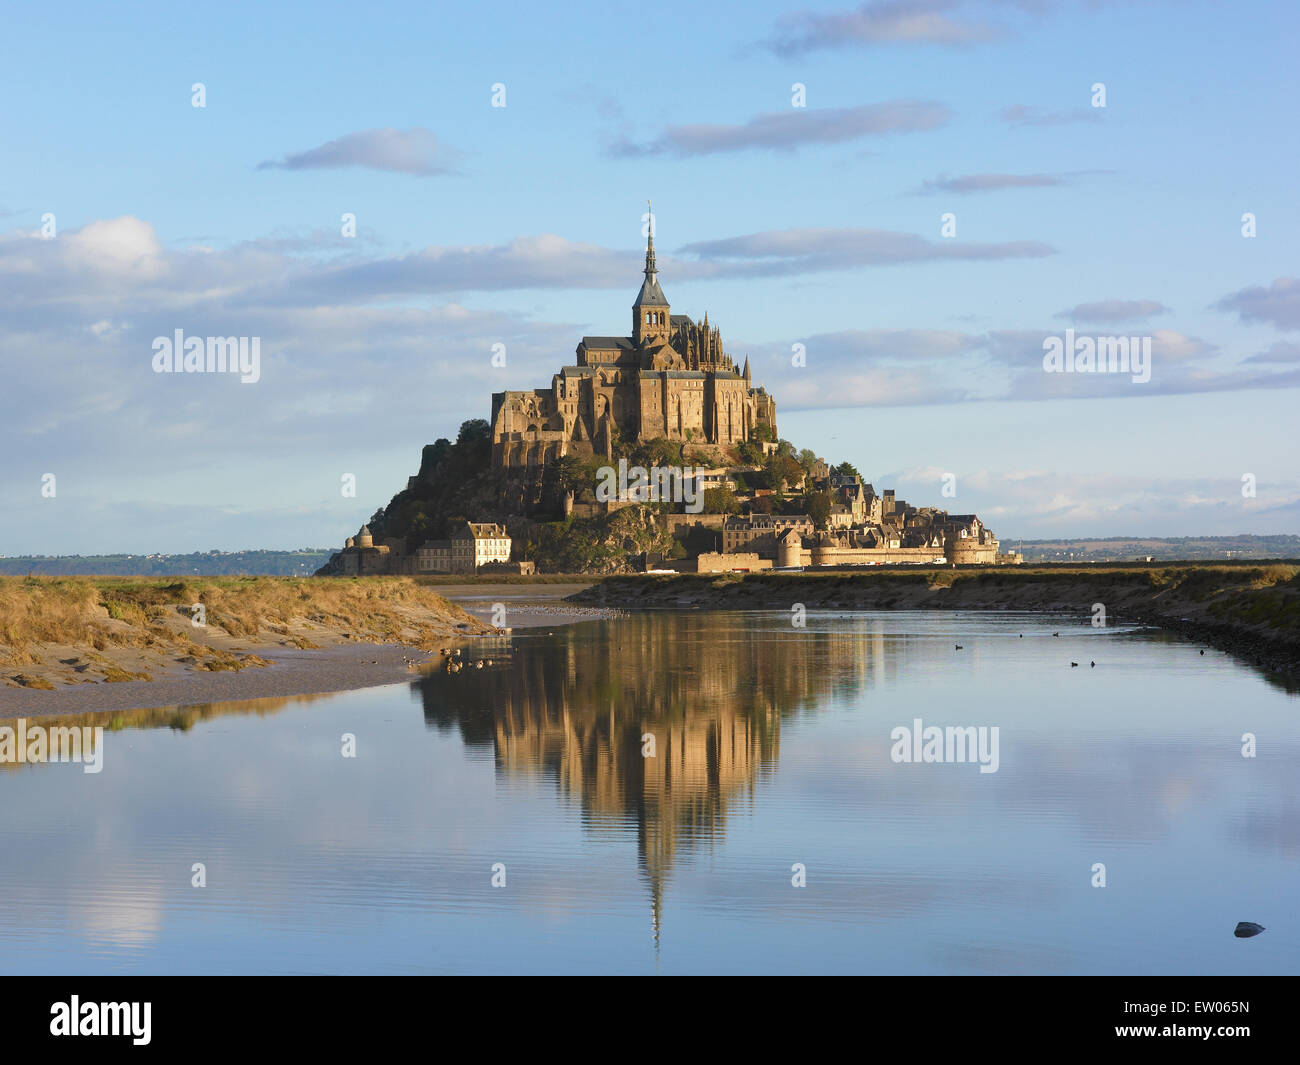 Le Mont Saint-Michel in France. Stock Photo